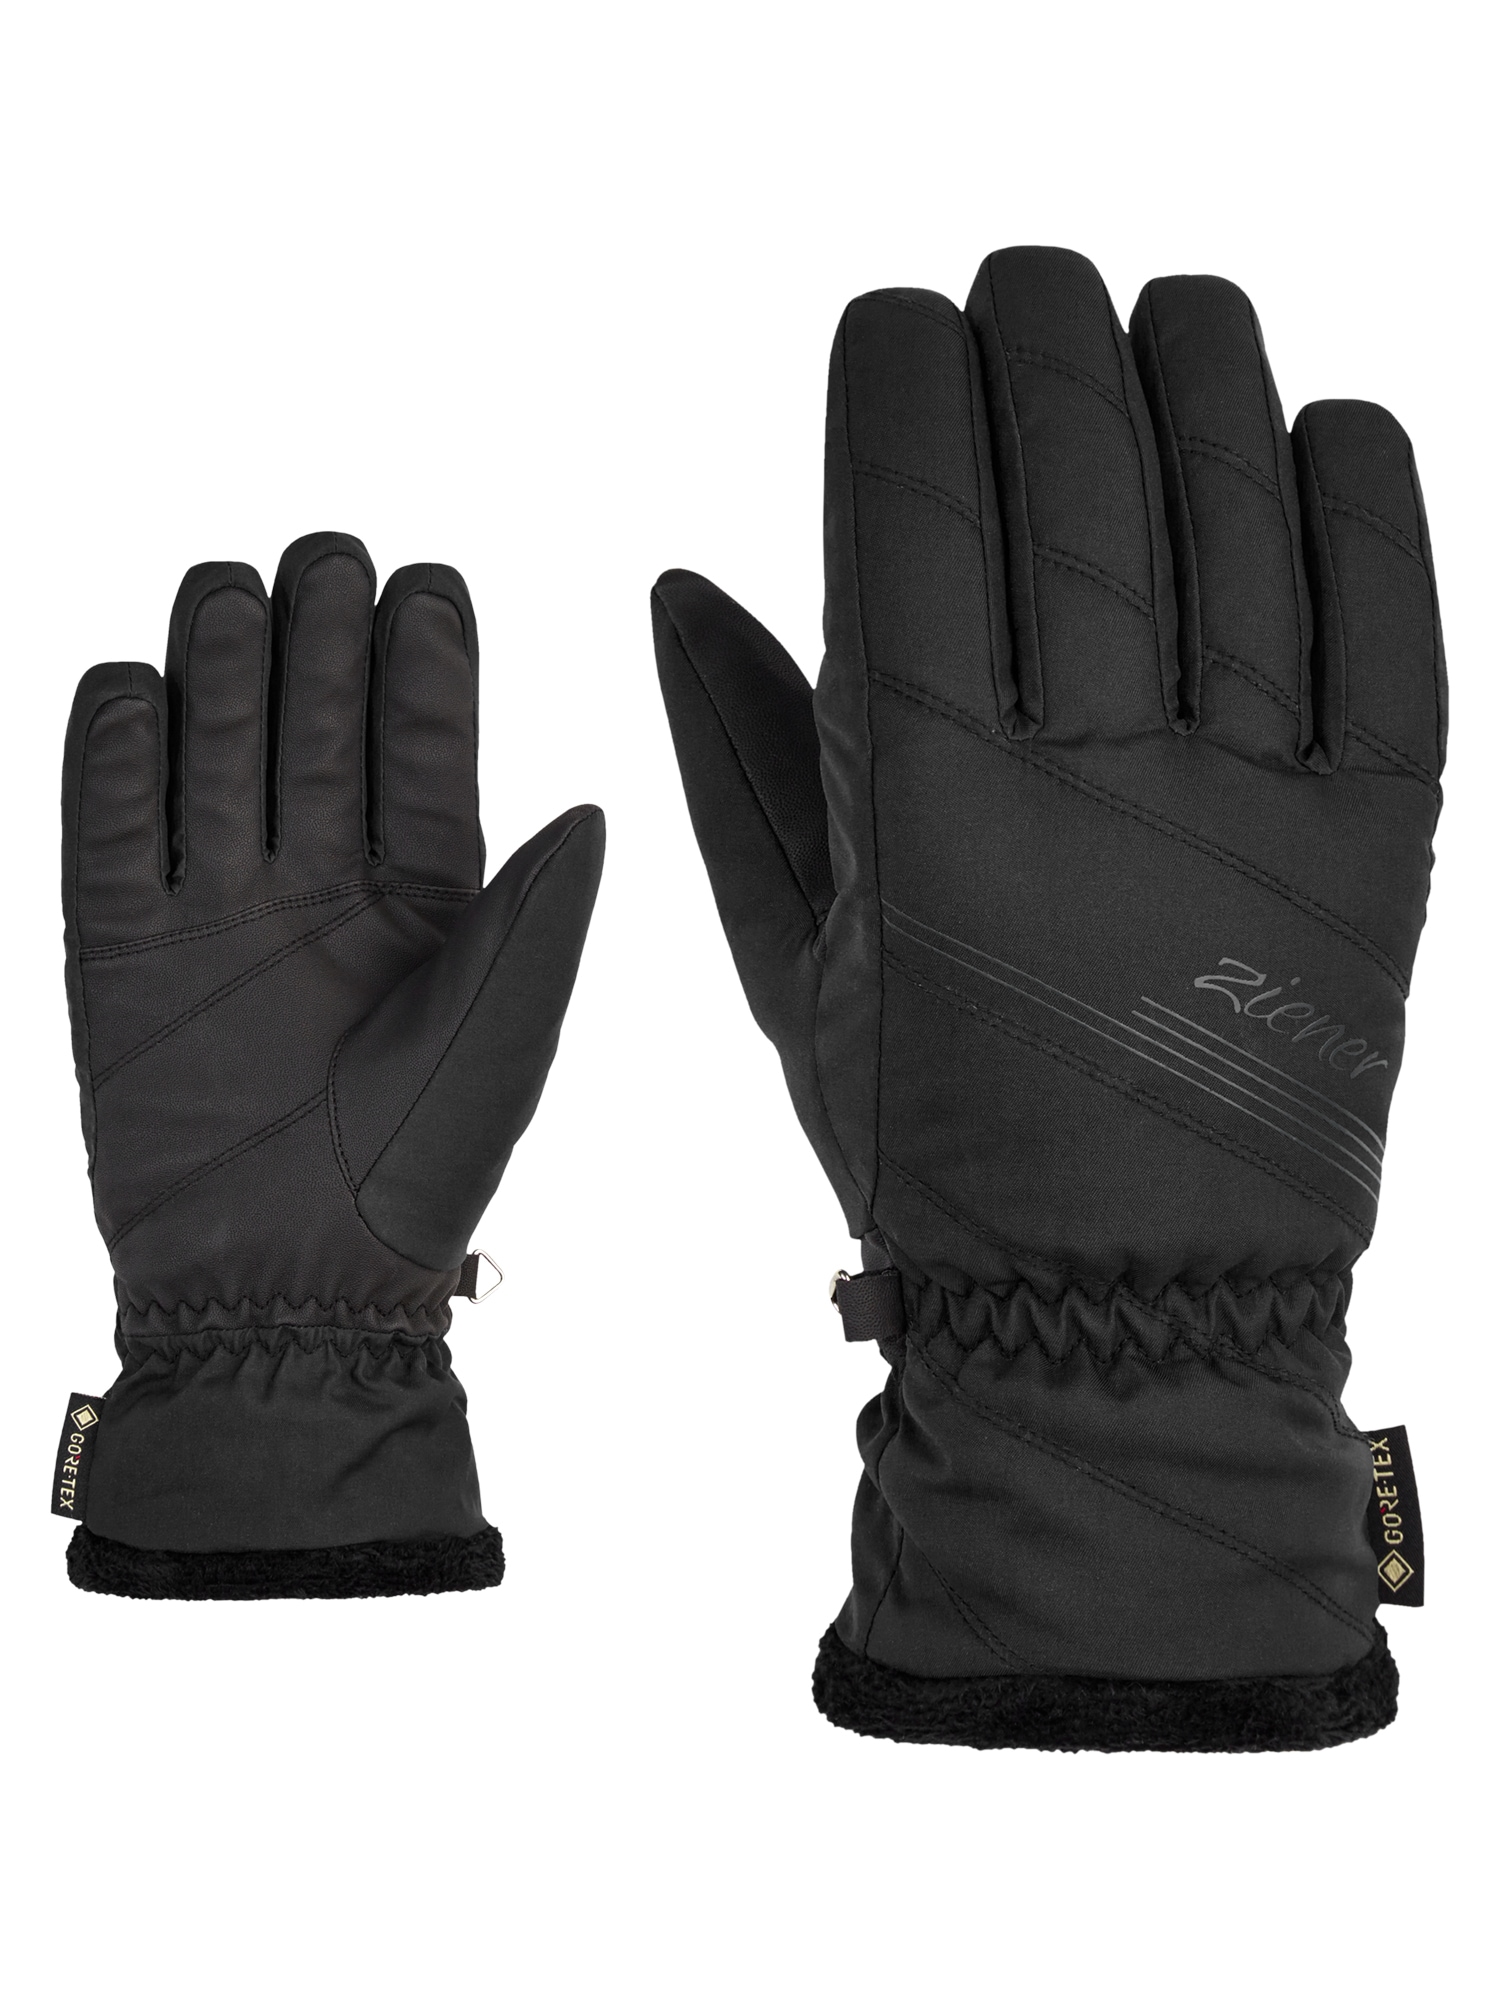 Handschuhe für Damen online bei Ackermann kaufen Handschuh 